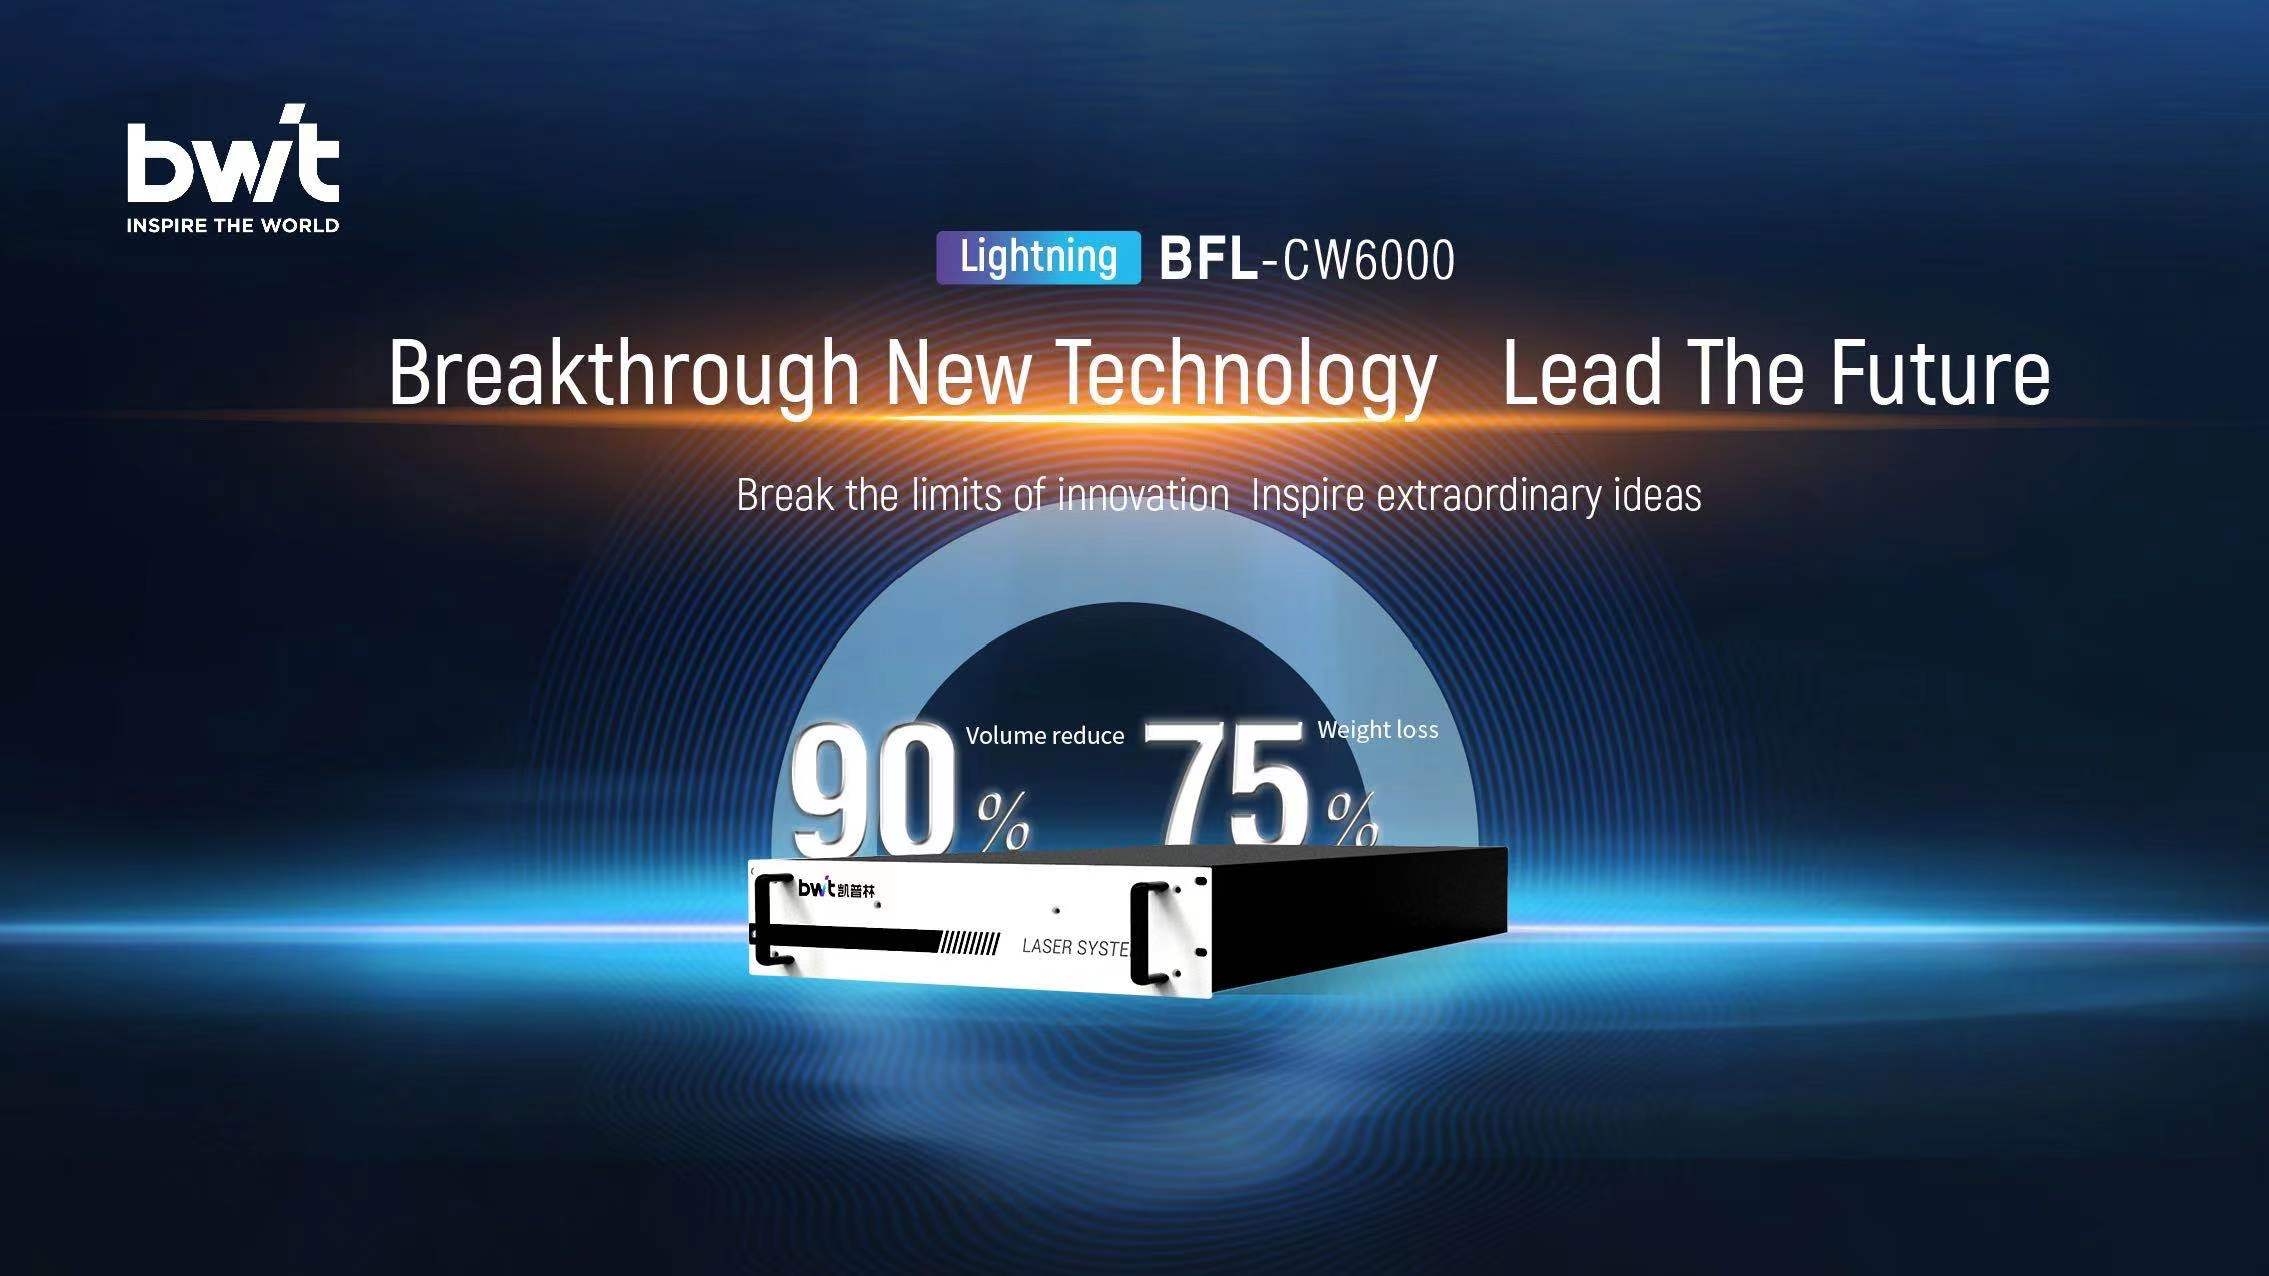 BWT نے Lightning 6000W فائبر لیزر لانچ کیا |چھوٹا، ہلکا اور ہوشیار